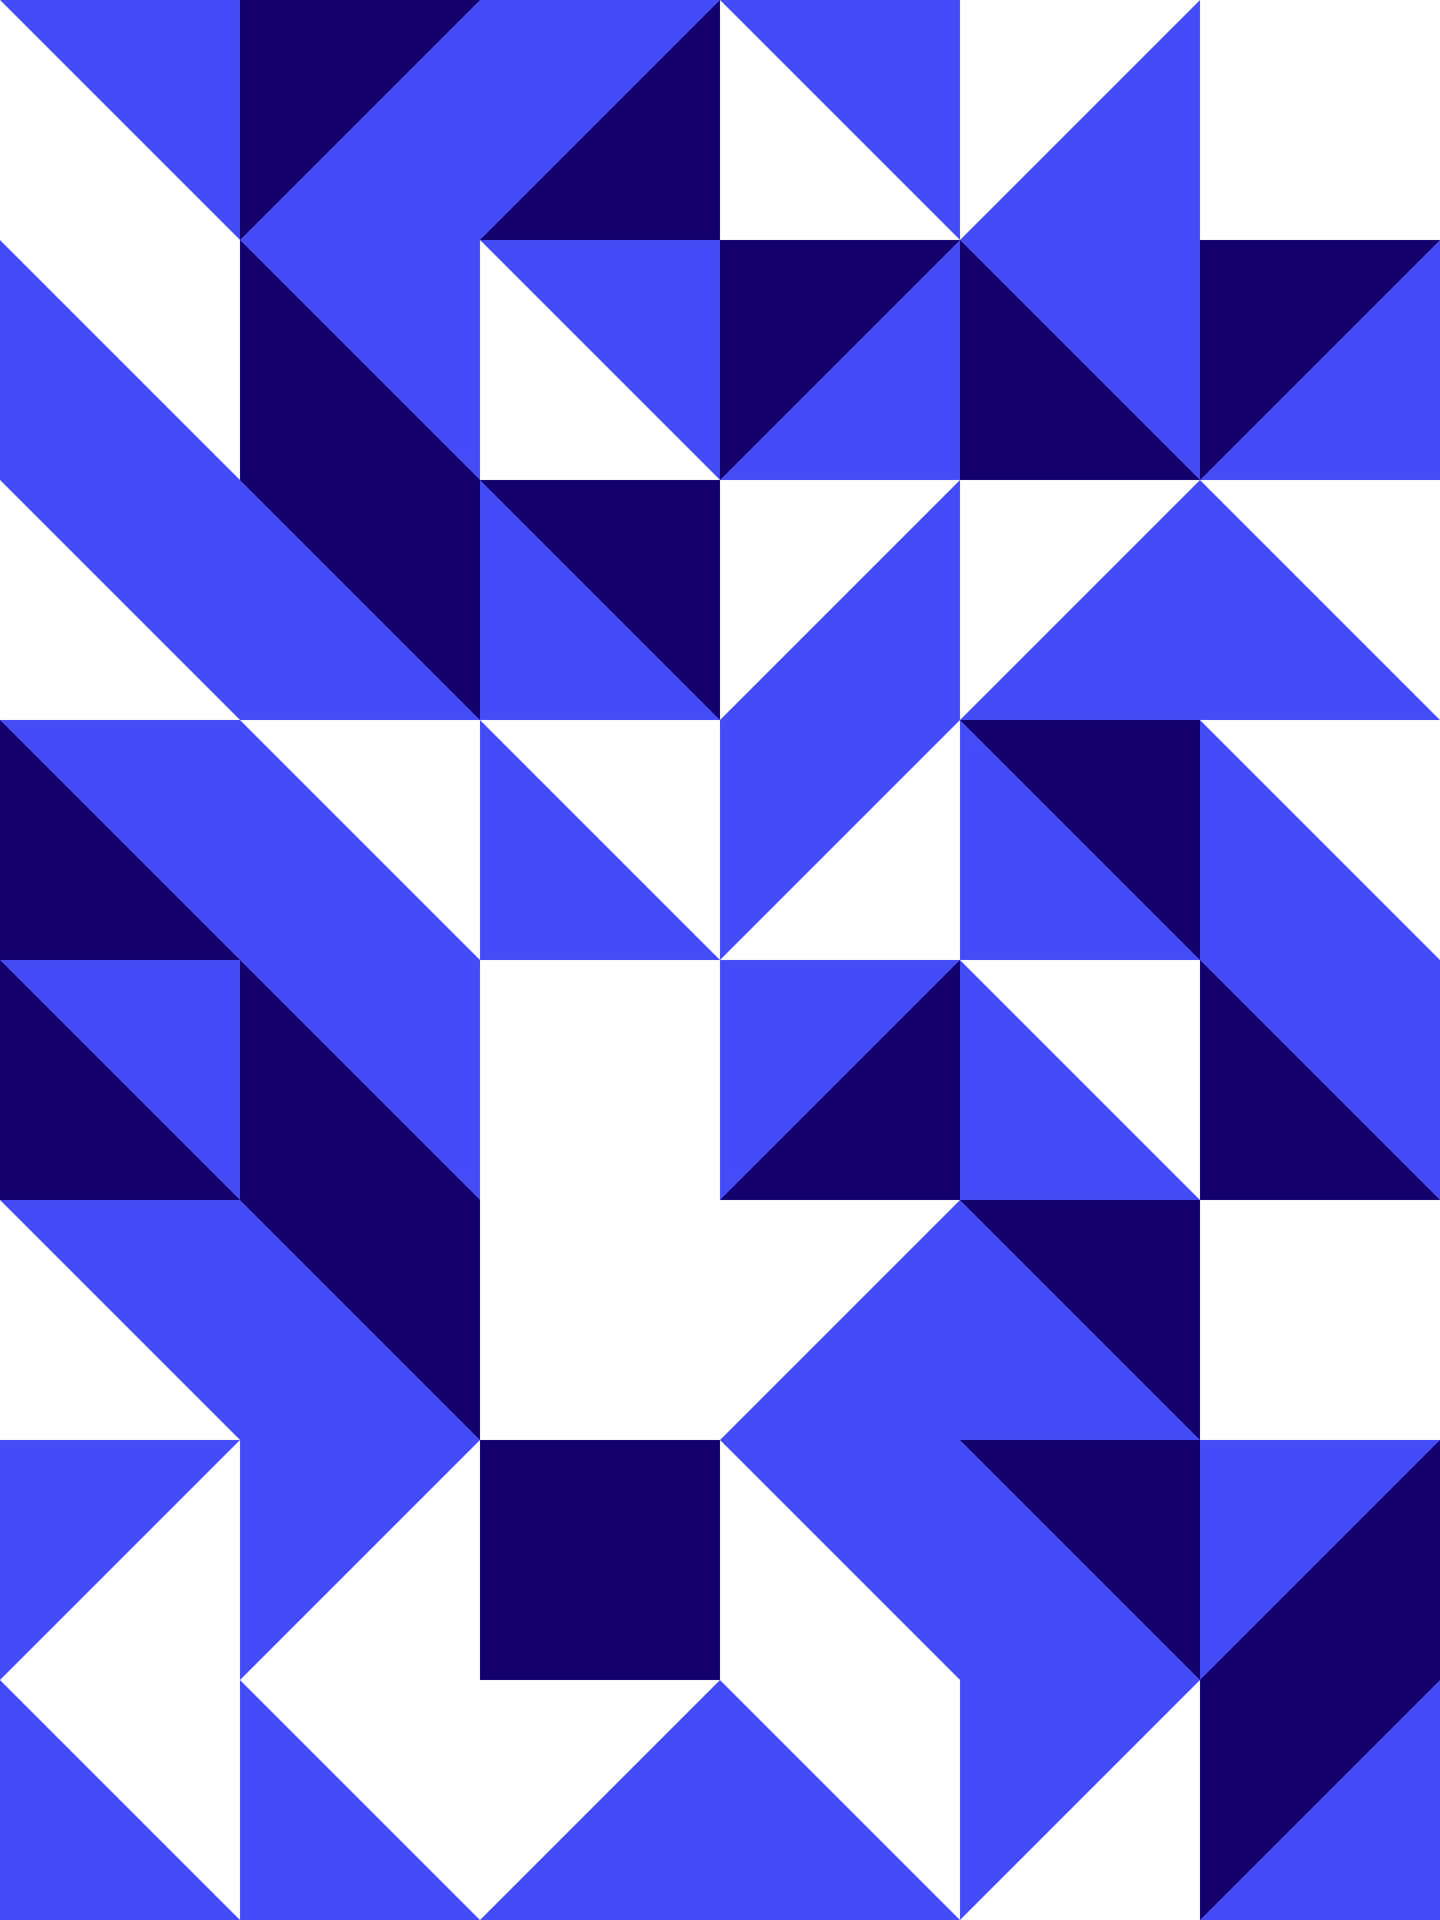 Imagencon Un Patrón Geométrico En Azul Brillante Y Blanco.